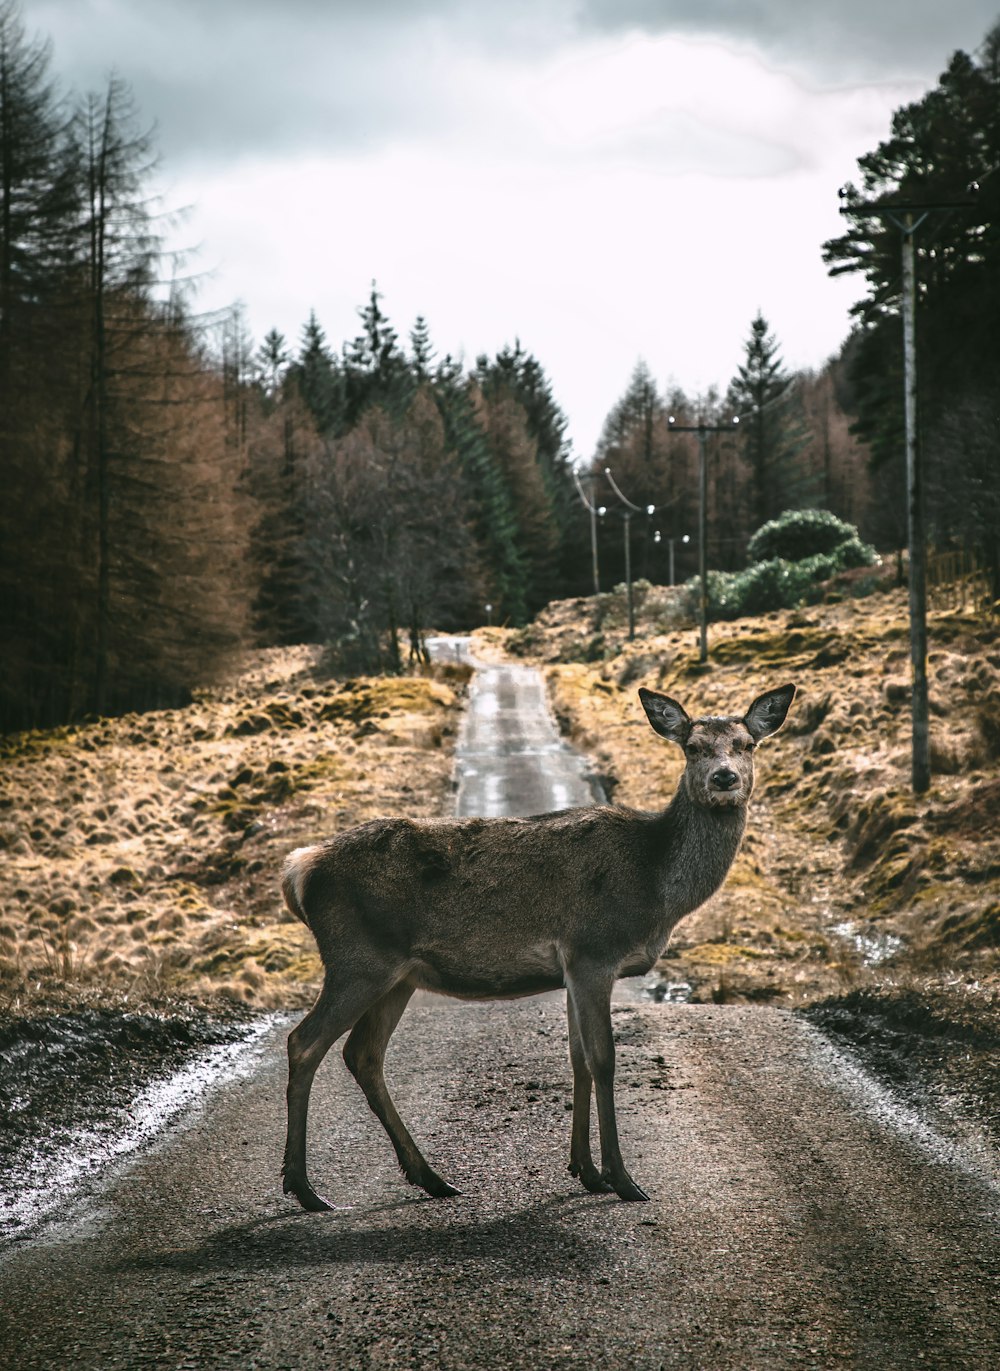 日中の道路の歩道に茶色の鹿